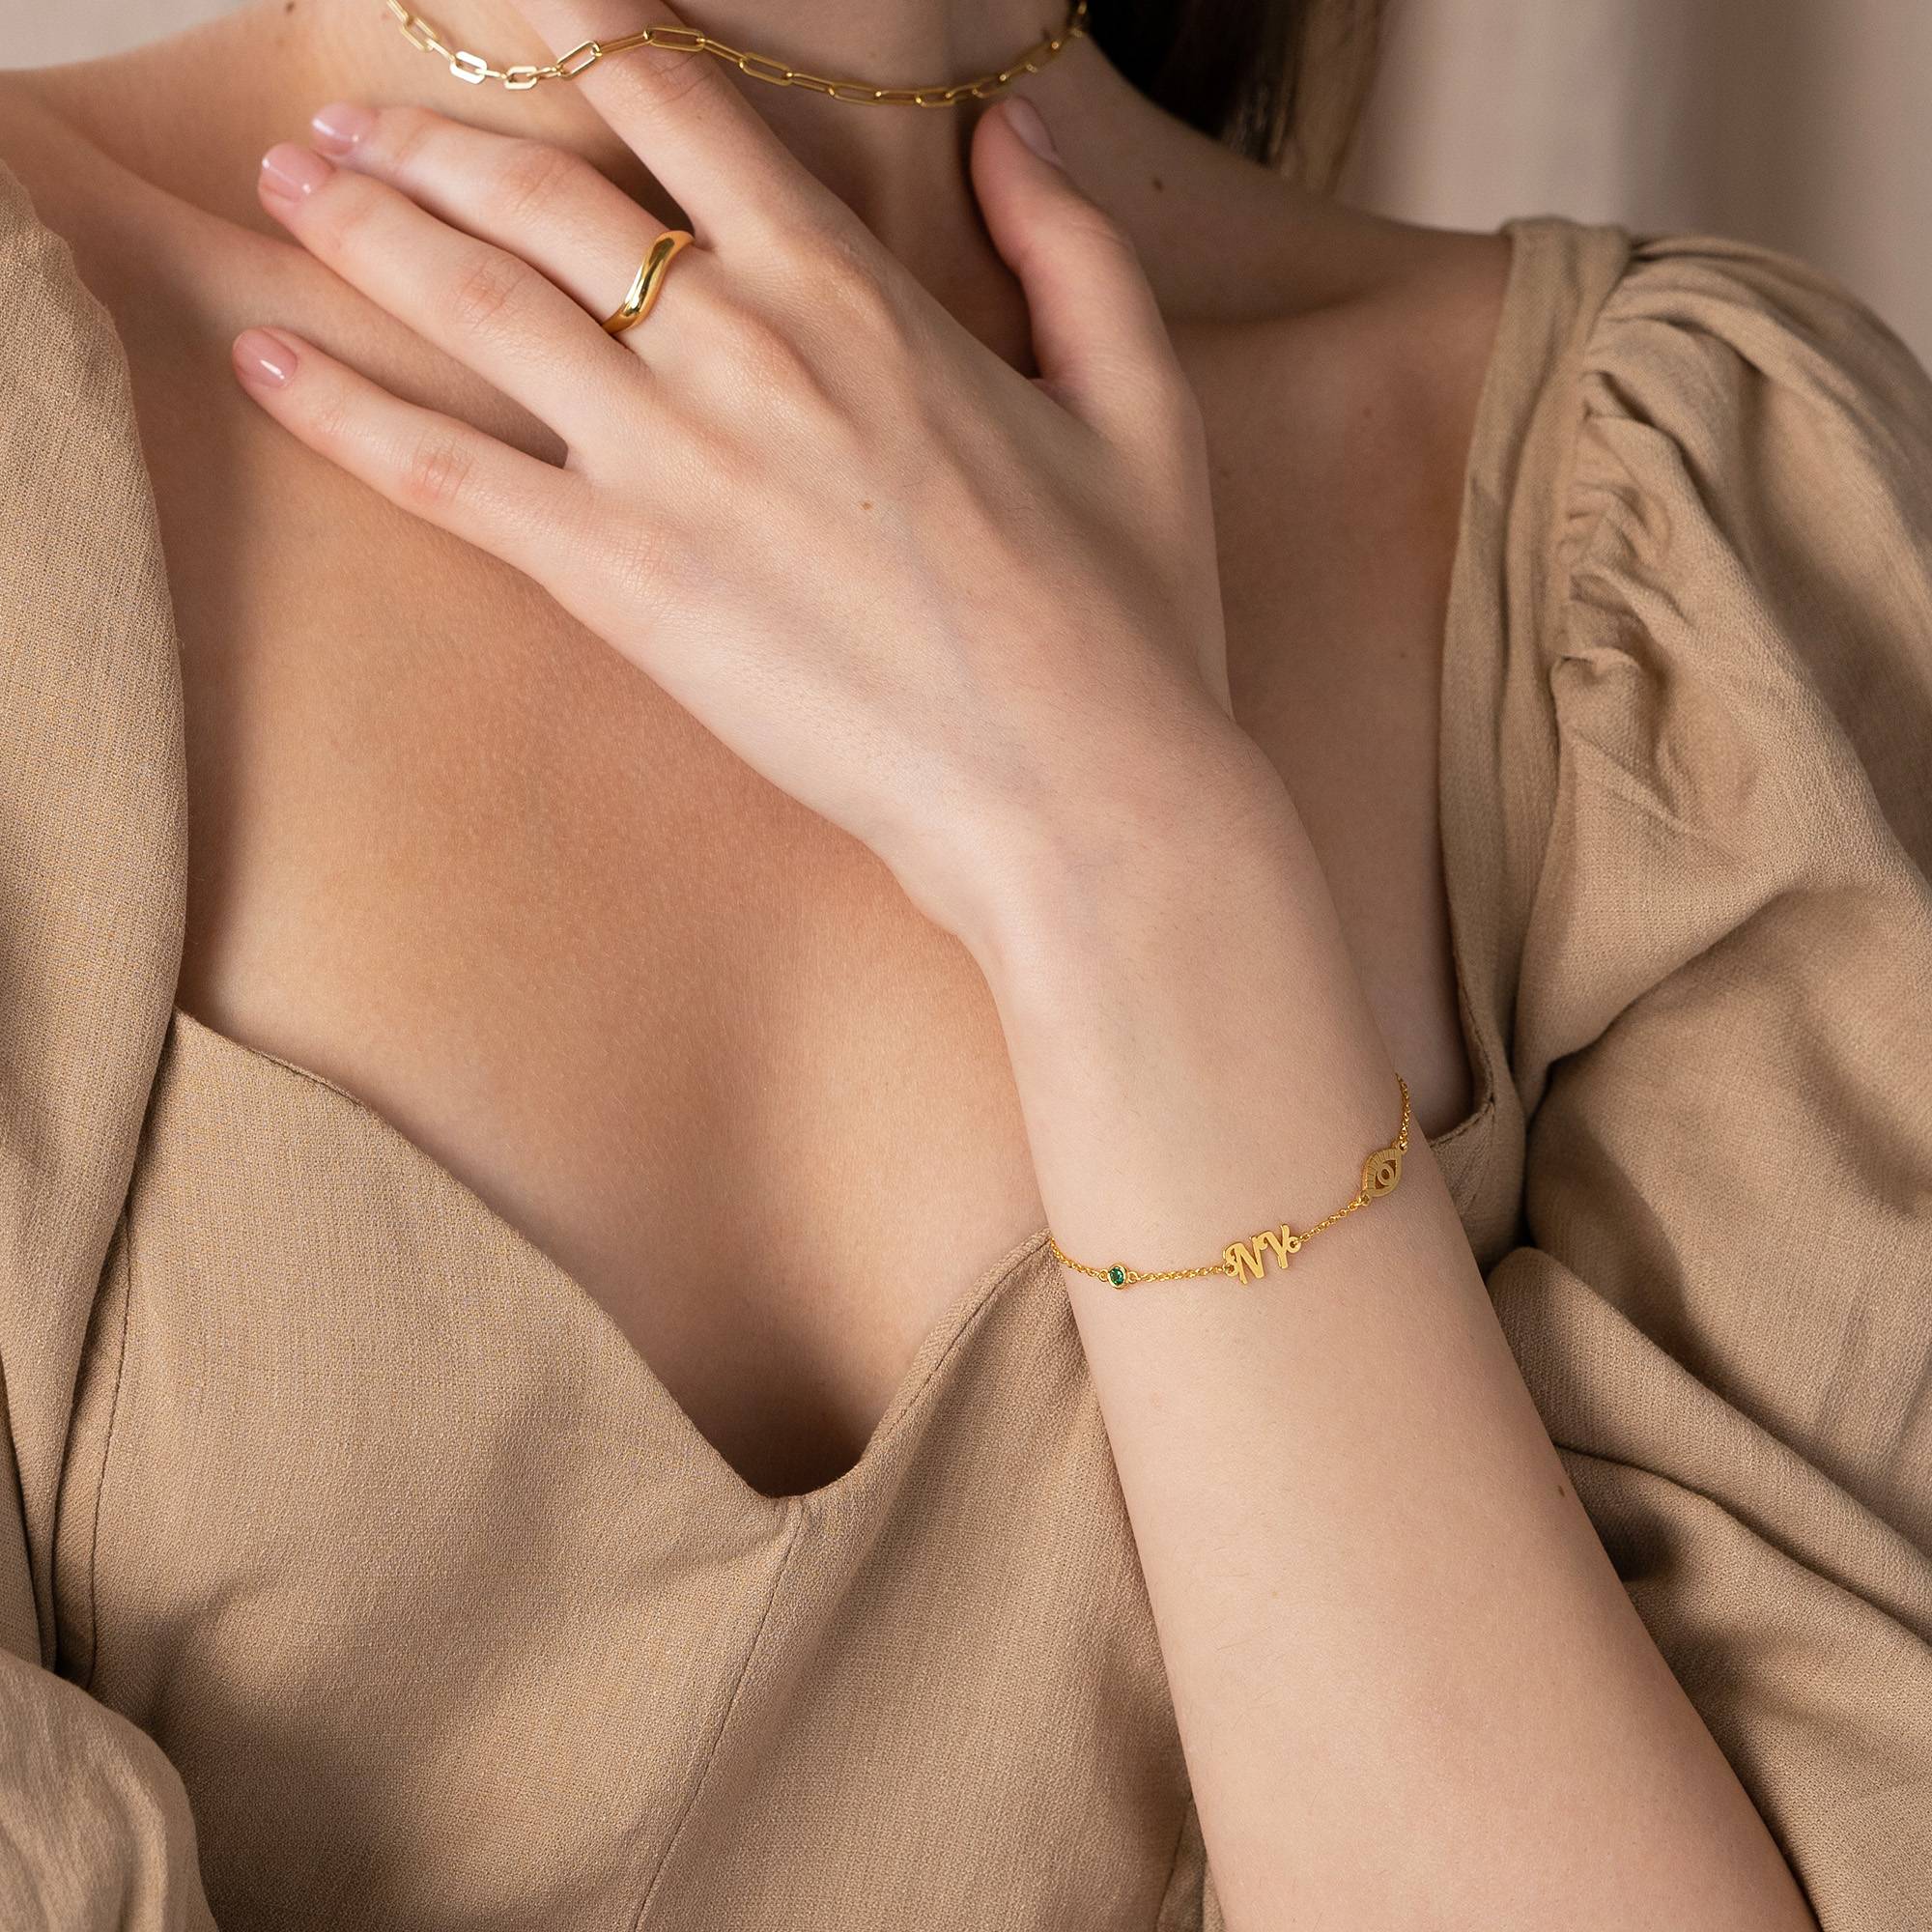 18k Goud Vergulde Bridget Boze Oog Initiaal Armband/Enkelbandje met Edelsteen-1 Productfoto